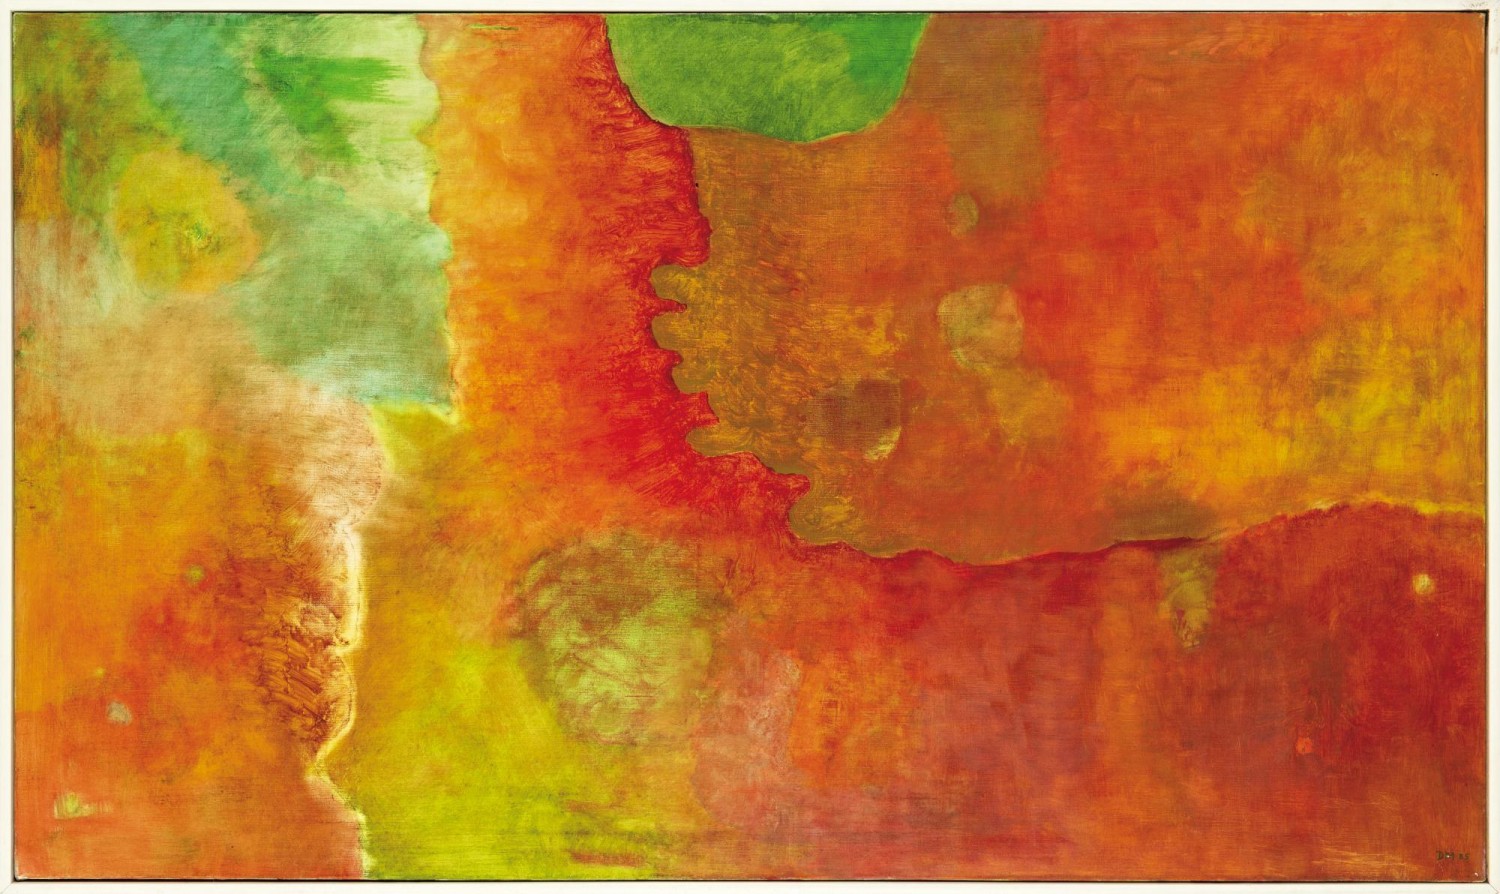 Daisy Mrázková: Zelená–červená, 1985, olej na plátně, 62 × 140 cm, vyvolávací cena: 90 000 Kč (+ 20% aukční provize), 1. Art Consulting 24. 10. 2021